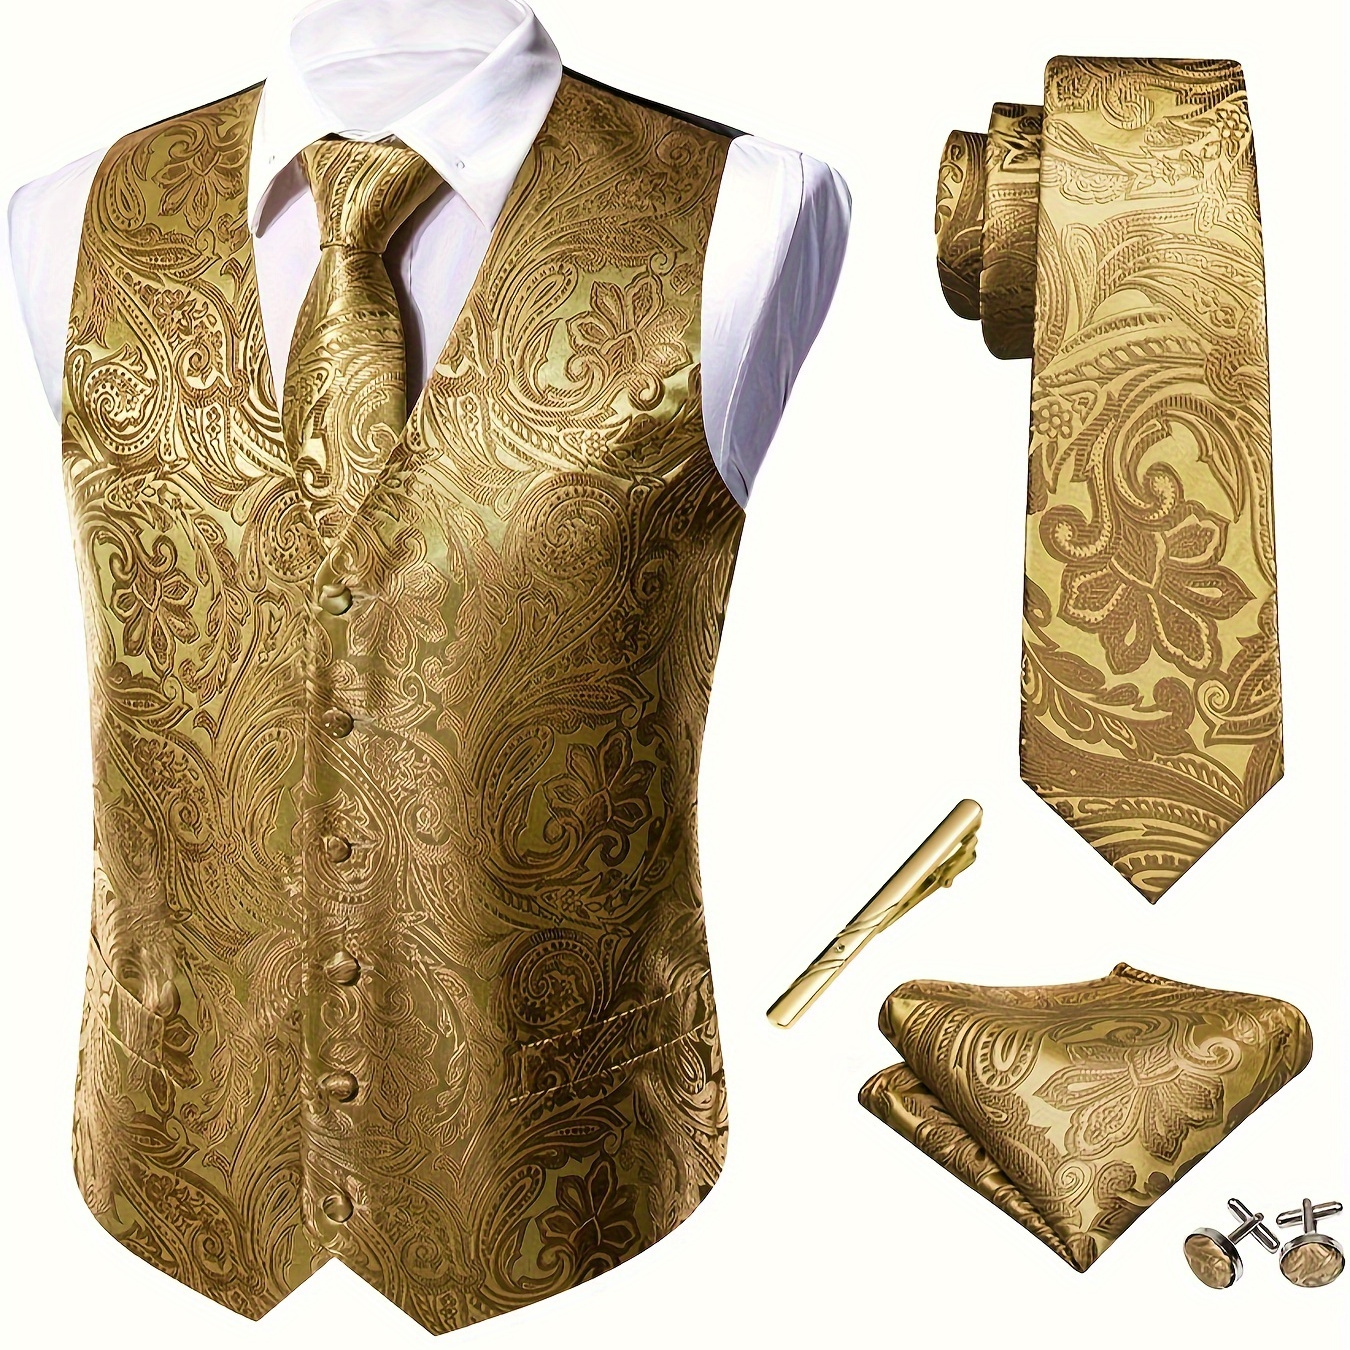 

Plus Size Men's Royal Golden Floral Pattern Jacquard V Neck Vest Suit, Waistcoat Necktie Square Hanky Cufflinks Tie 5pcs Set, For Wedding Suit Set